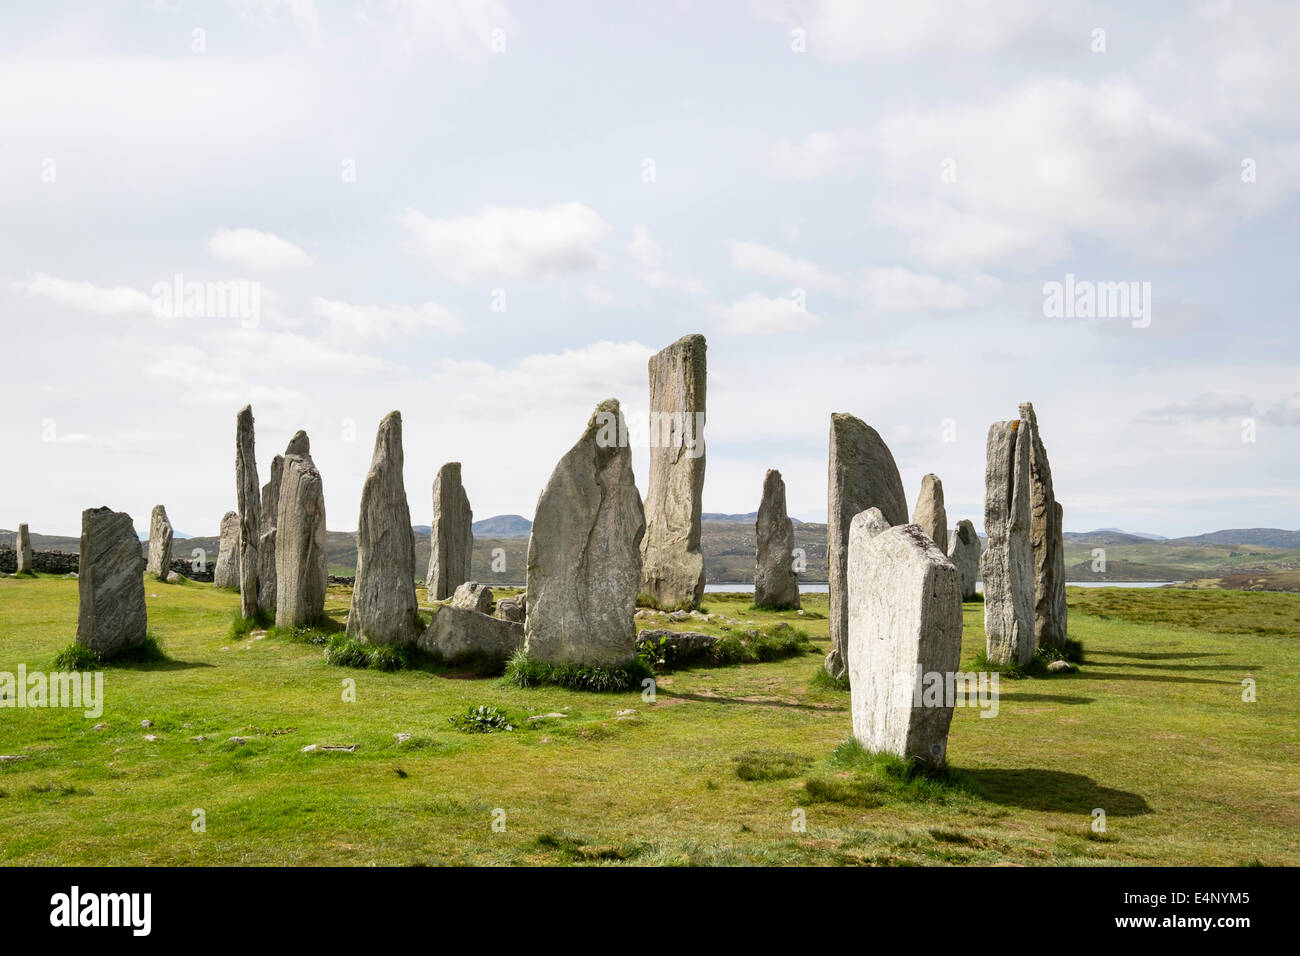 Callanish Steinkreis neolithischen stehenden Steinen ab 4500 v. Chr. Calanais Isle of Lewis äußeren Hebriden Western Isles Scotland UK Stockfoto